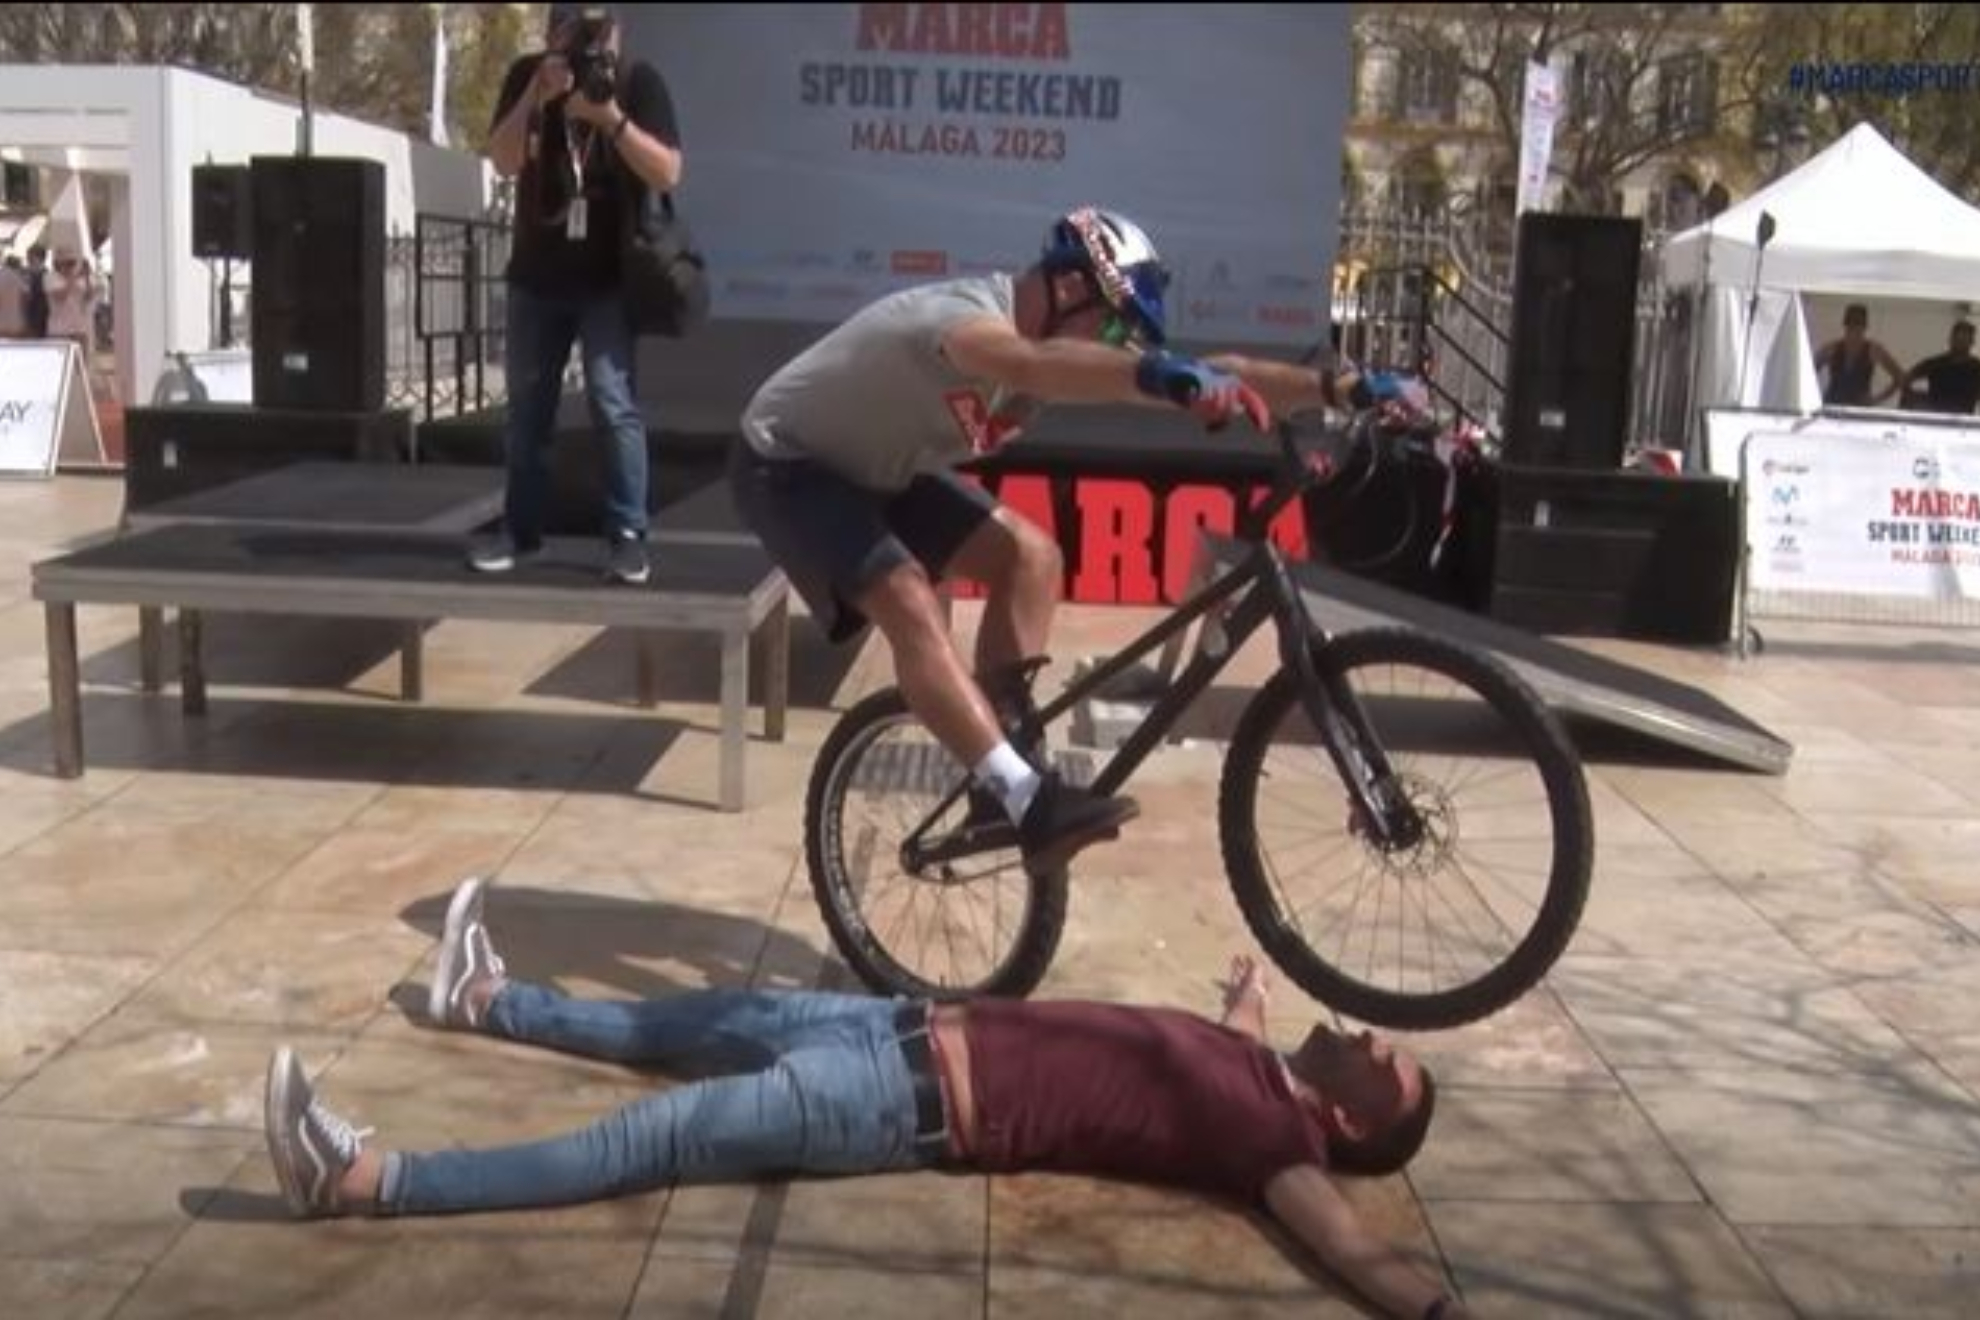 El miedo de un redactor de MARCA en la exhibición de bike trial, ¡qué h****s le echó!